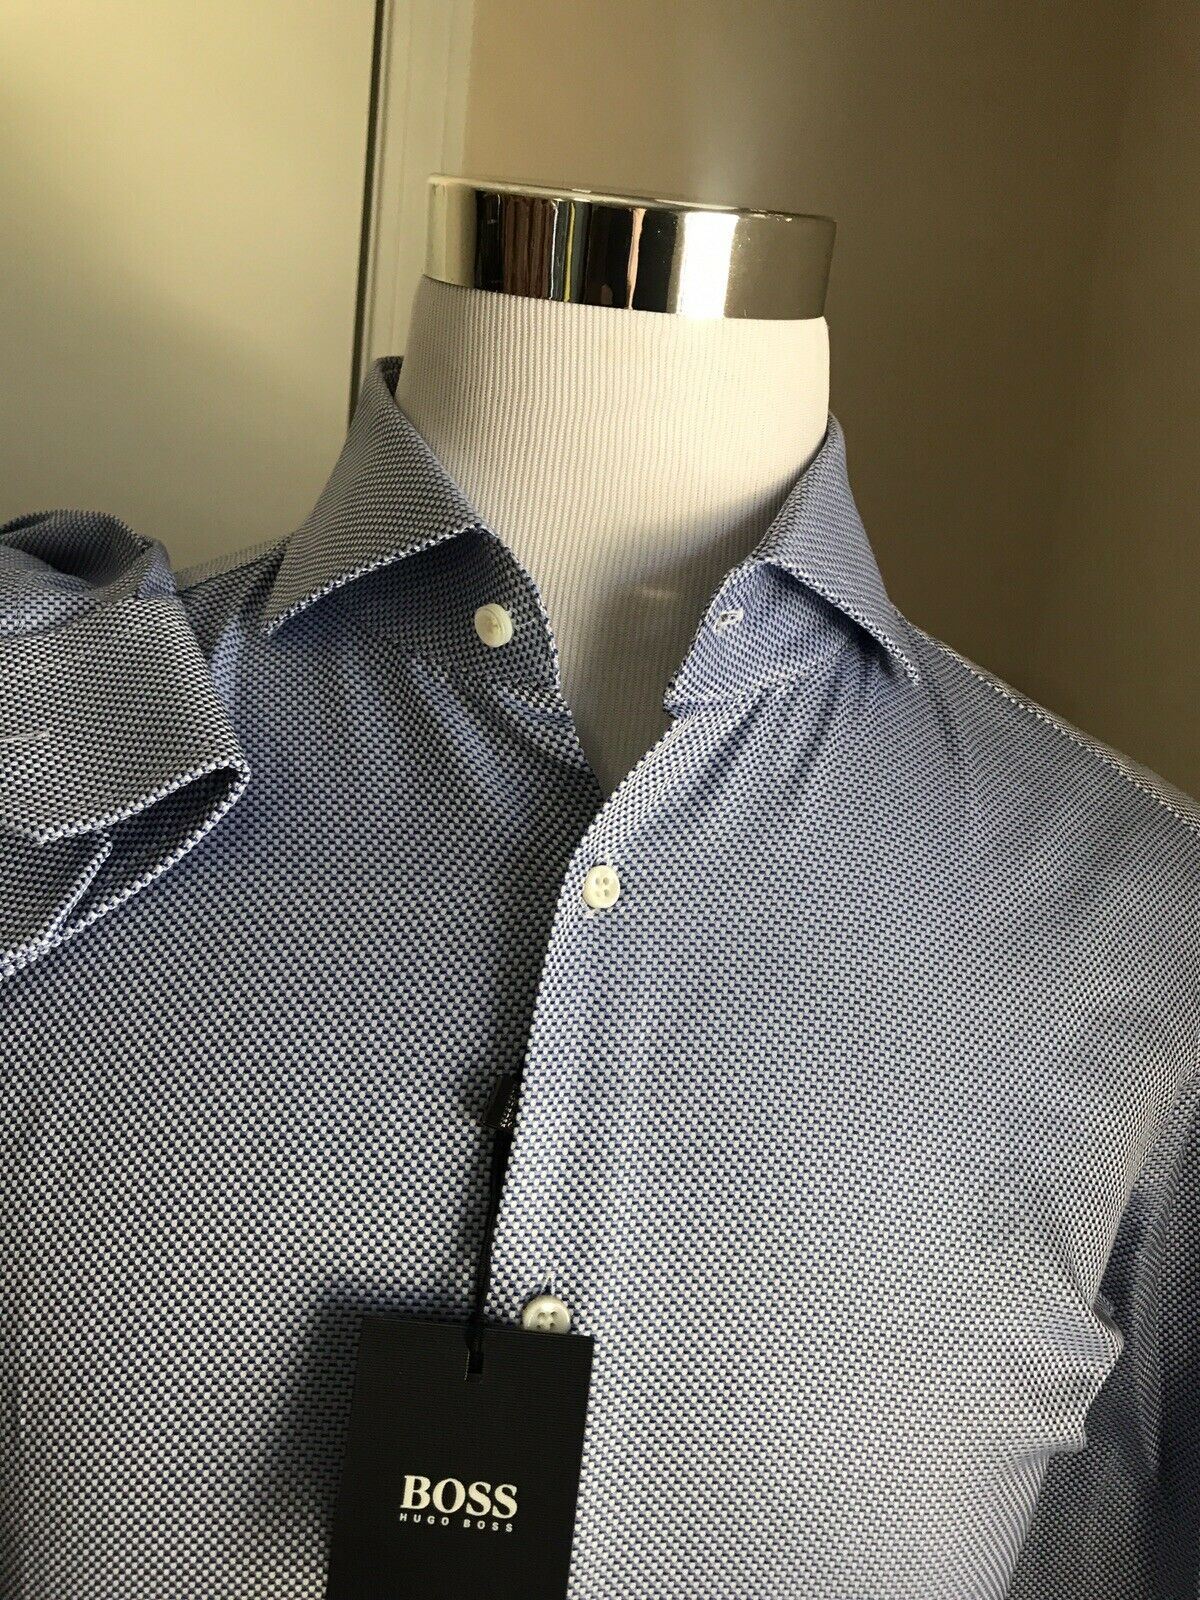 Neu mit Etikett: 200 $ Hugo Boss maßgeschneidertes blaues Herrenhemd in schmaler Passform, Größe 42/16,5